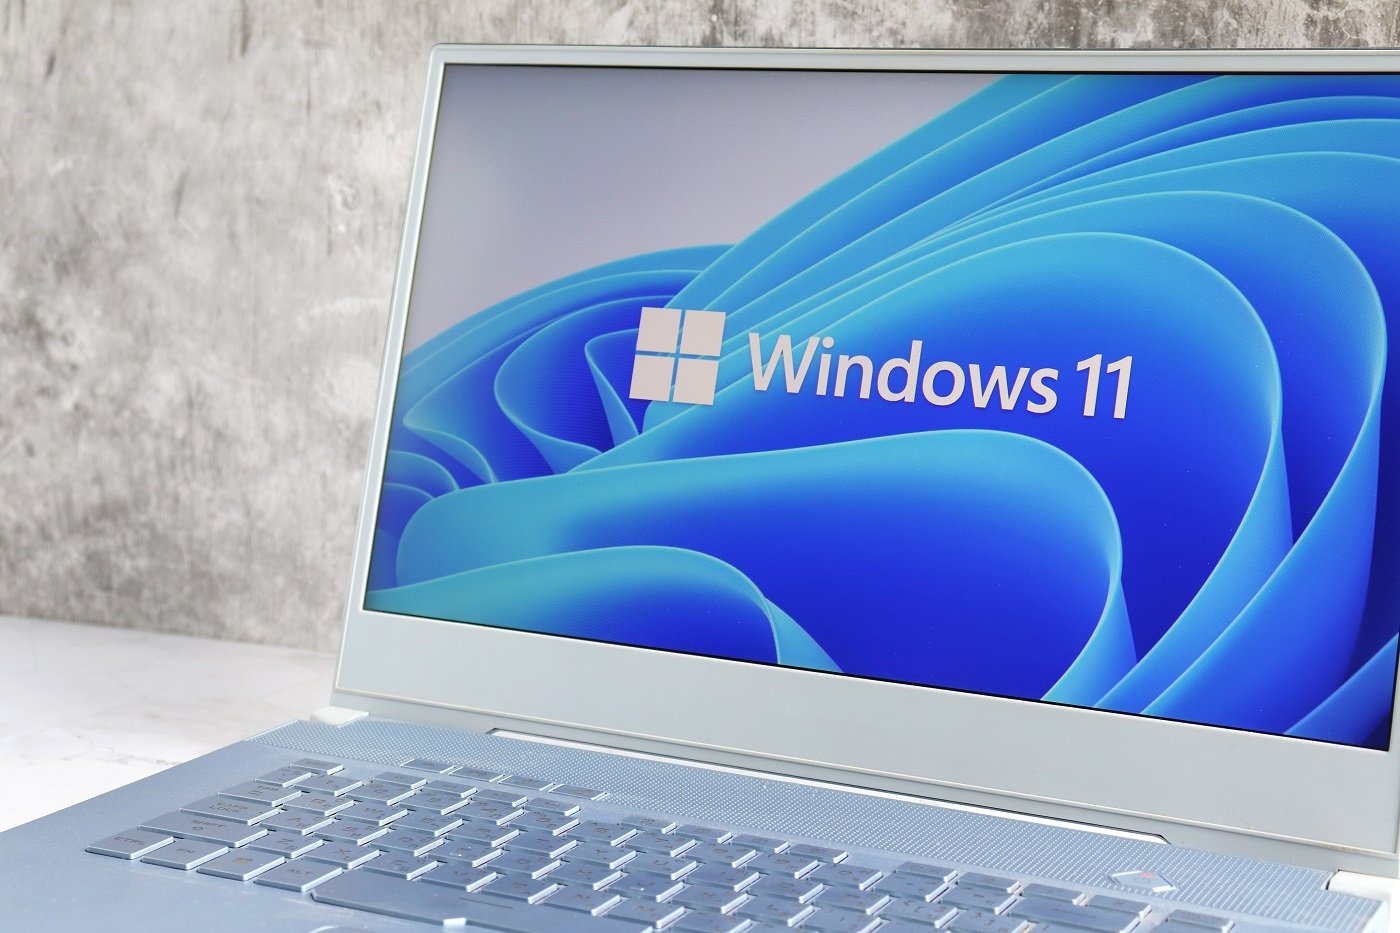 OFICIAL - INSTALE AGORA MESMO o Windows 11 Sem TPM 2.0 em Computadores não  elegiveis 